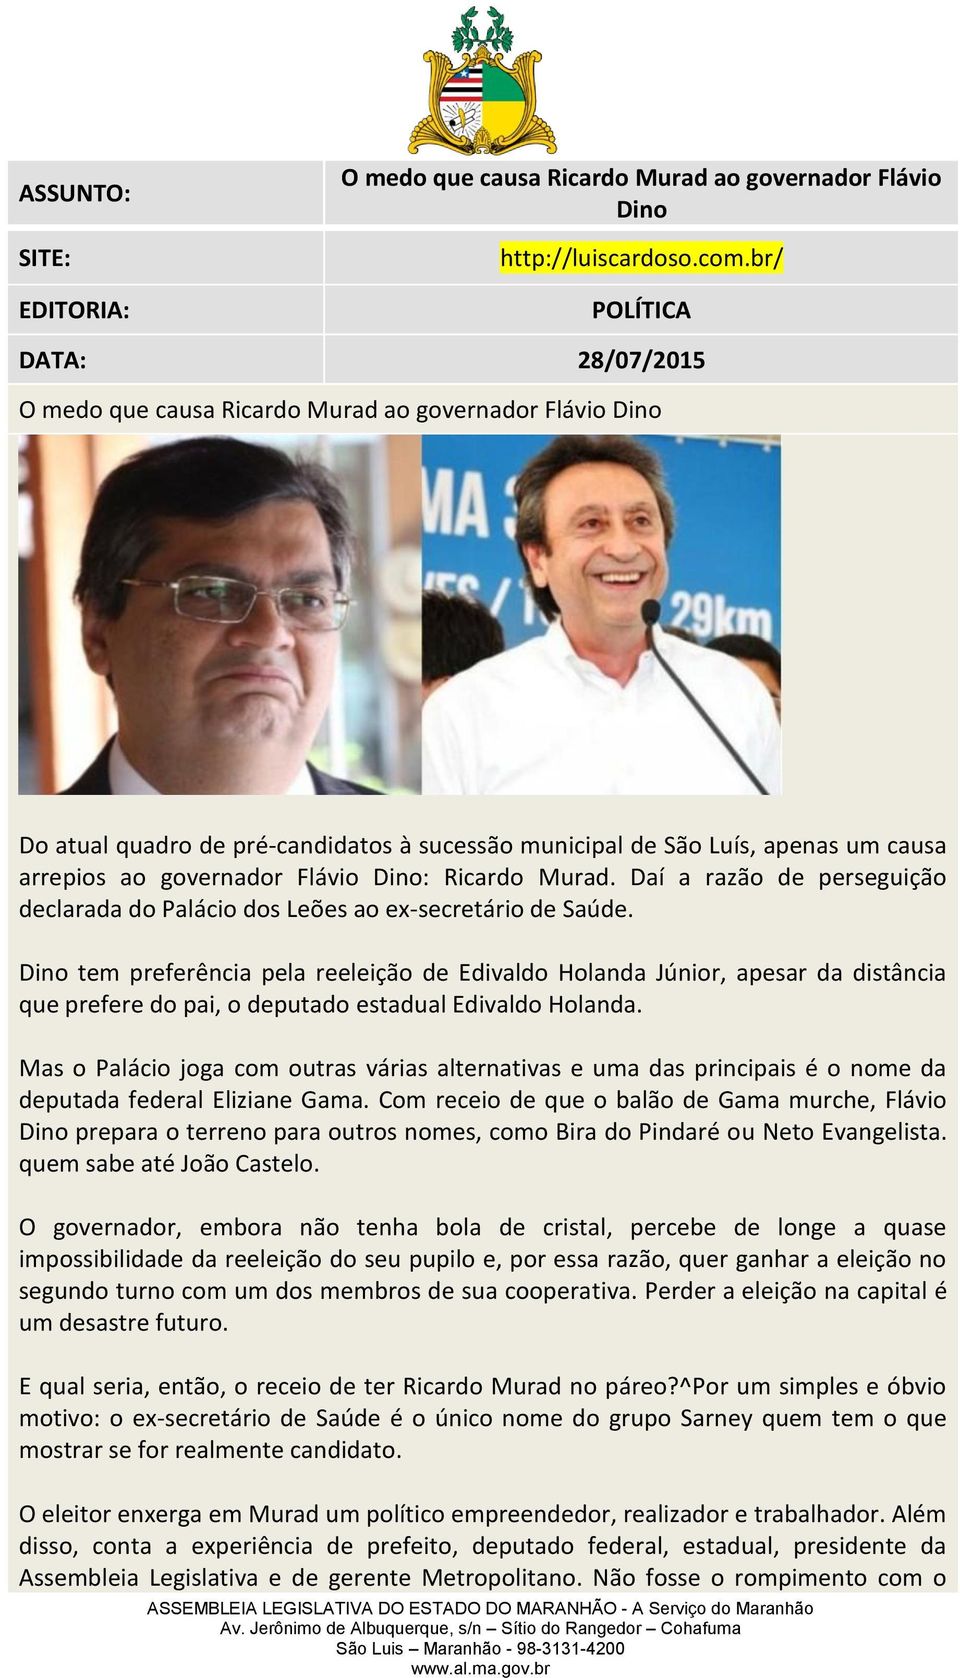 Flávio Dino: Ricardo Murad. Daí a razão de perseguição declarada do Palácio dos Leões ao ex-secretário de Saúde.